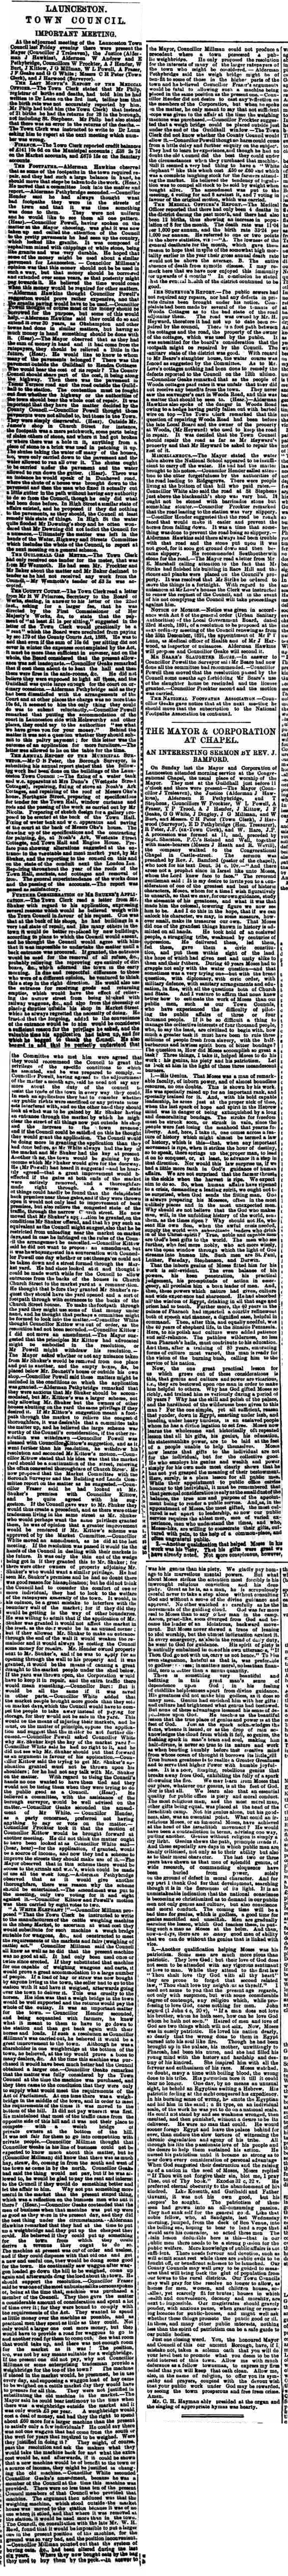 20 November 1891